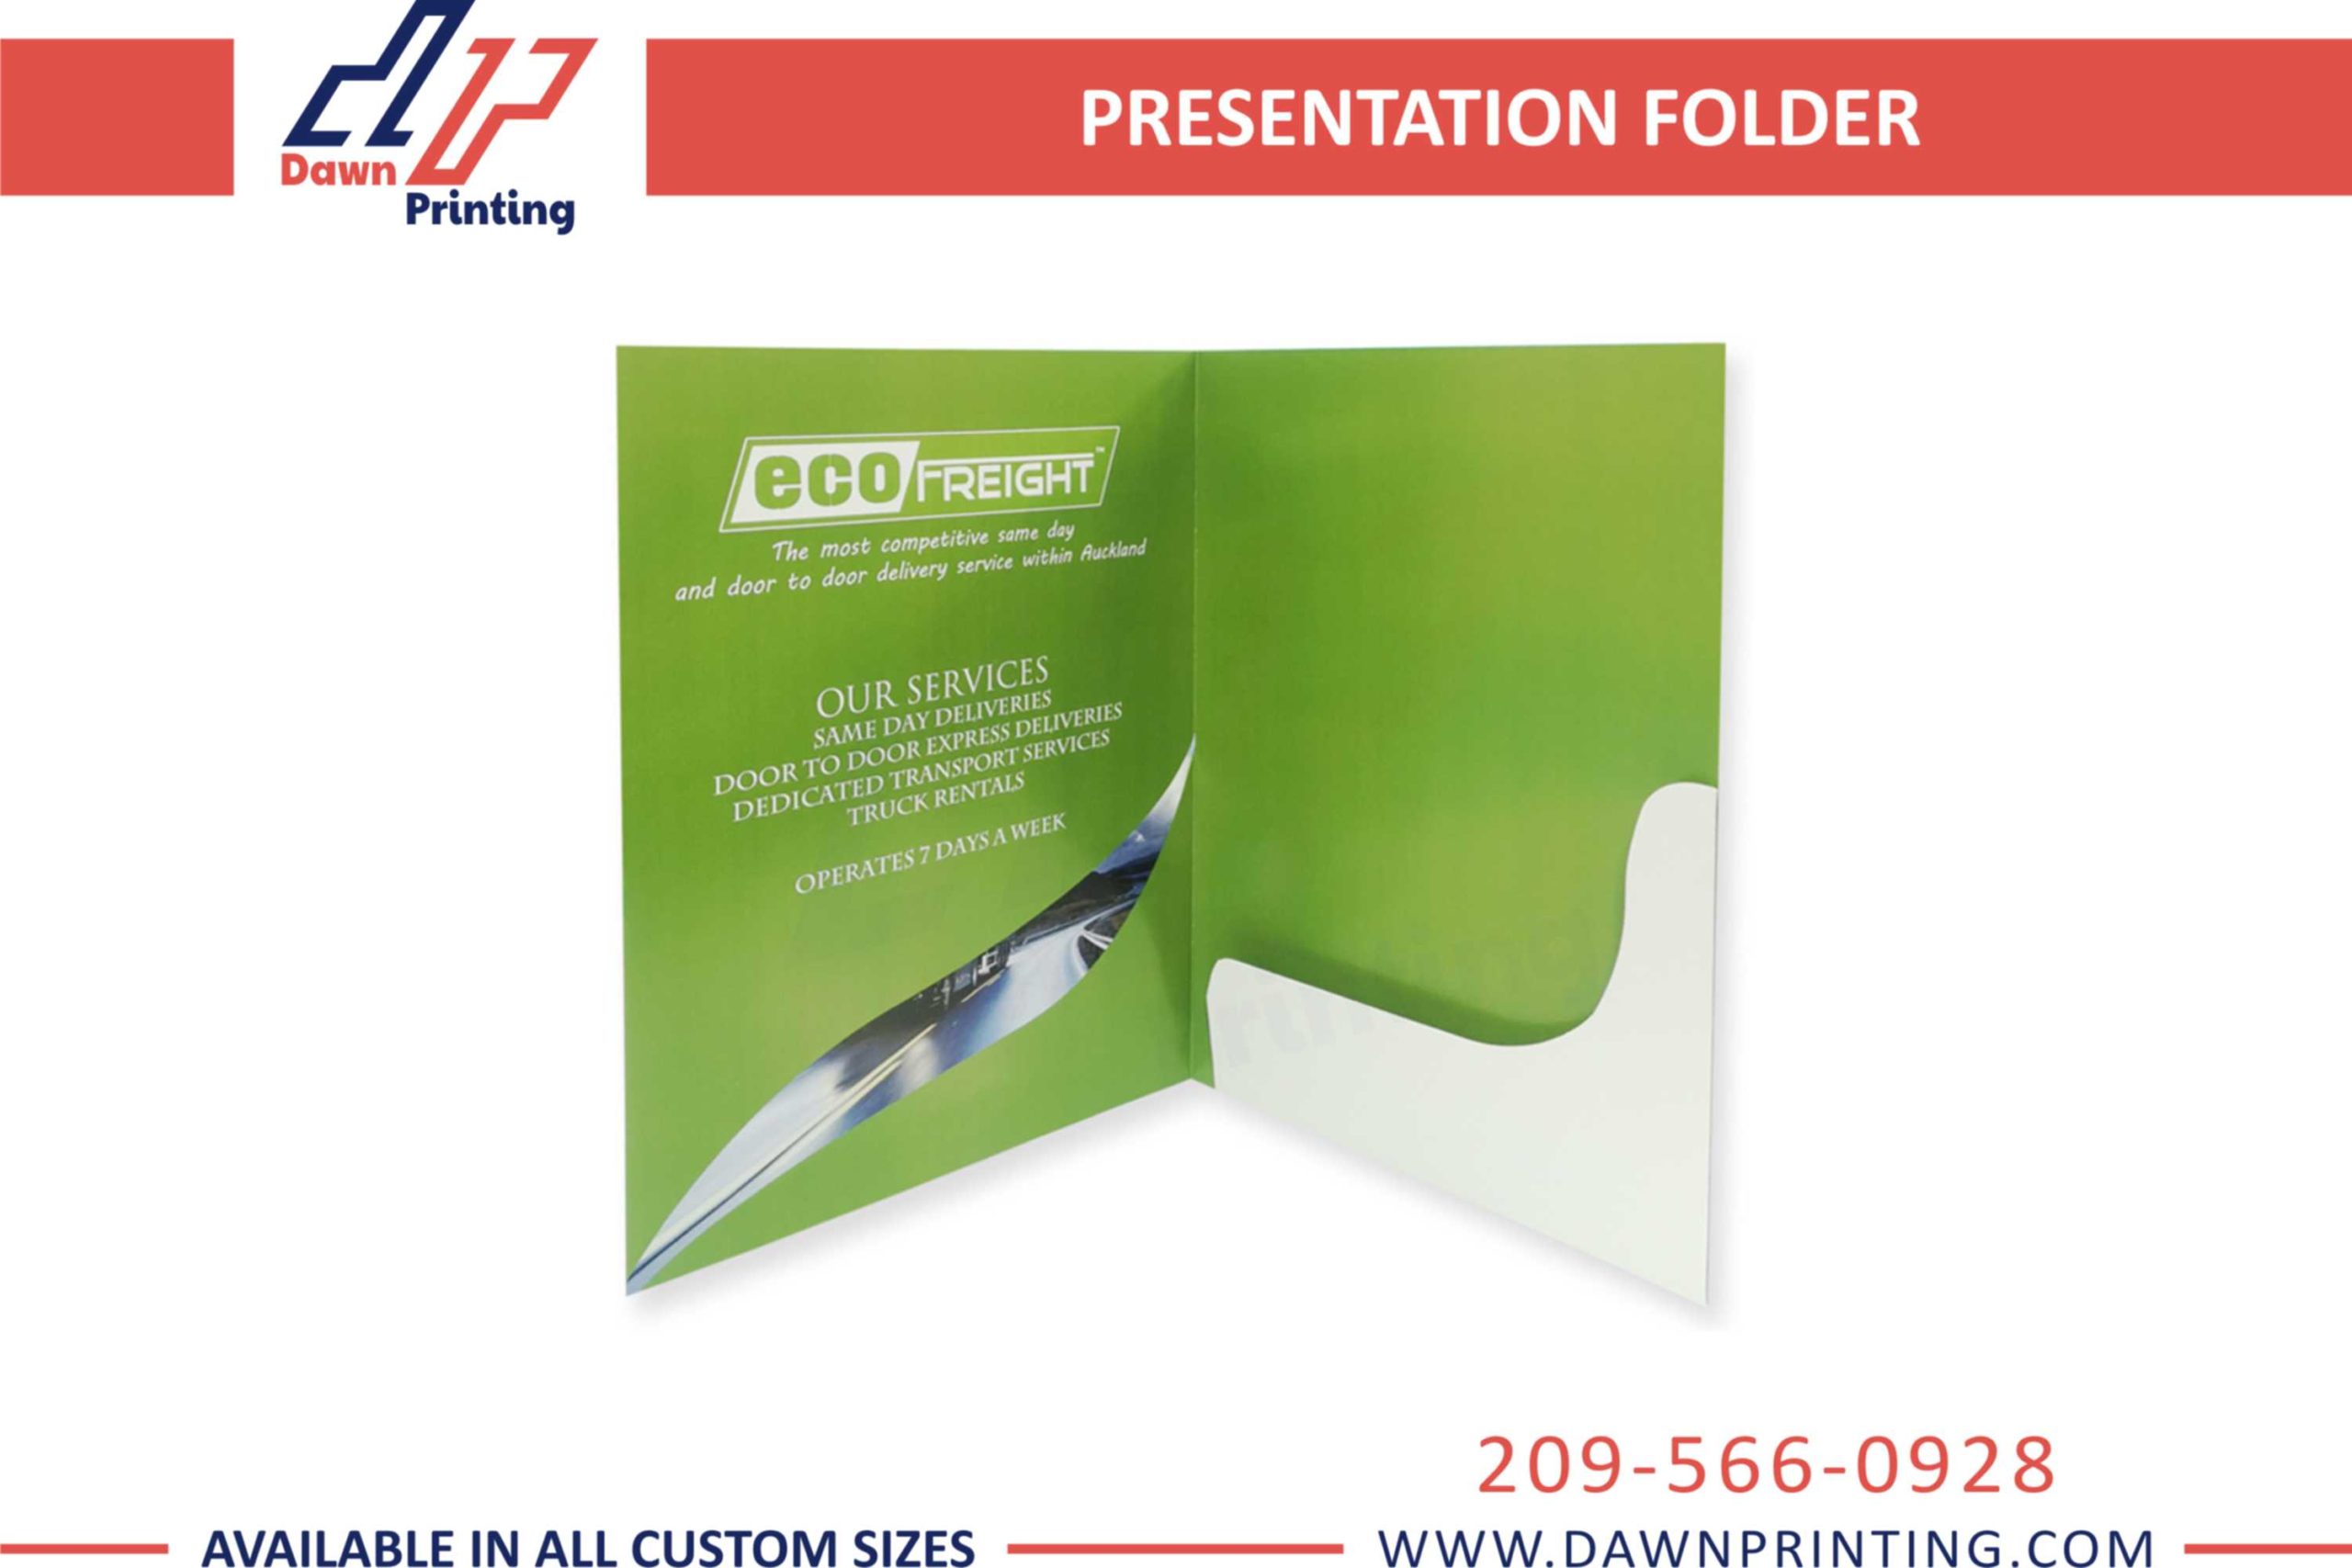 Custom Presentation Folder - Dawn Printing